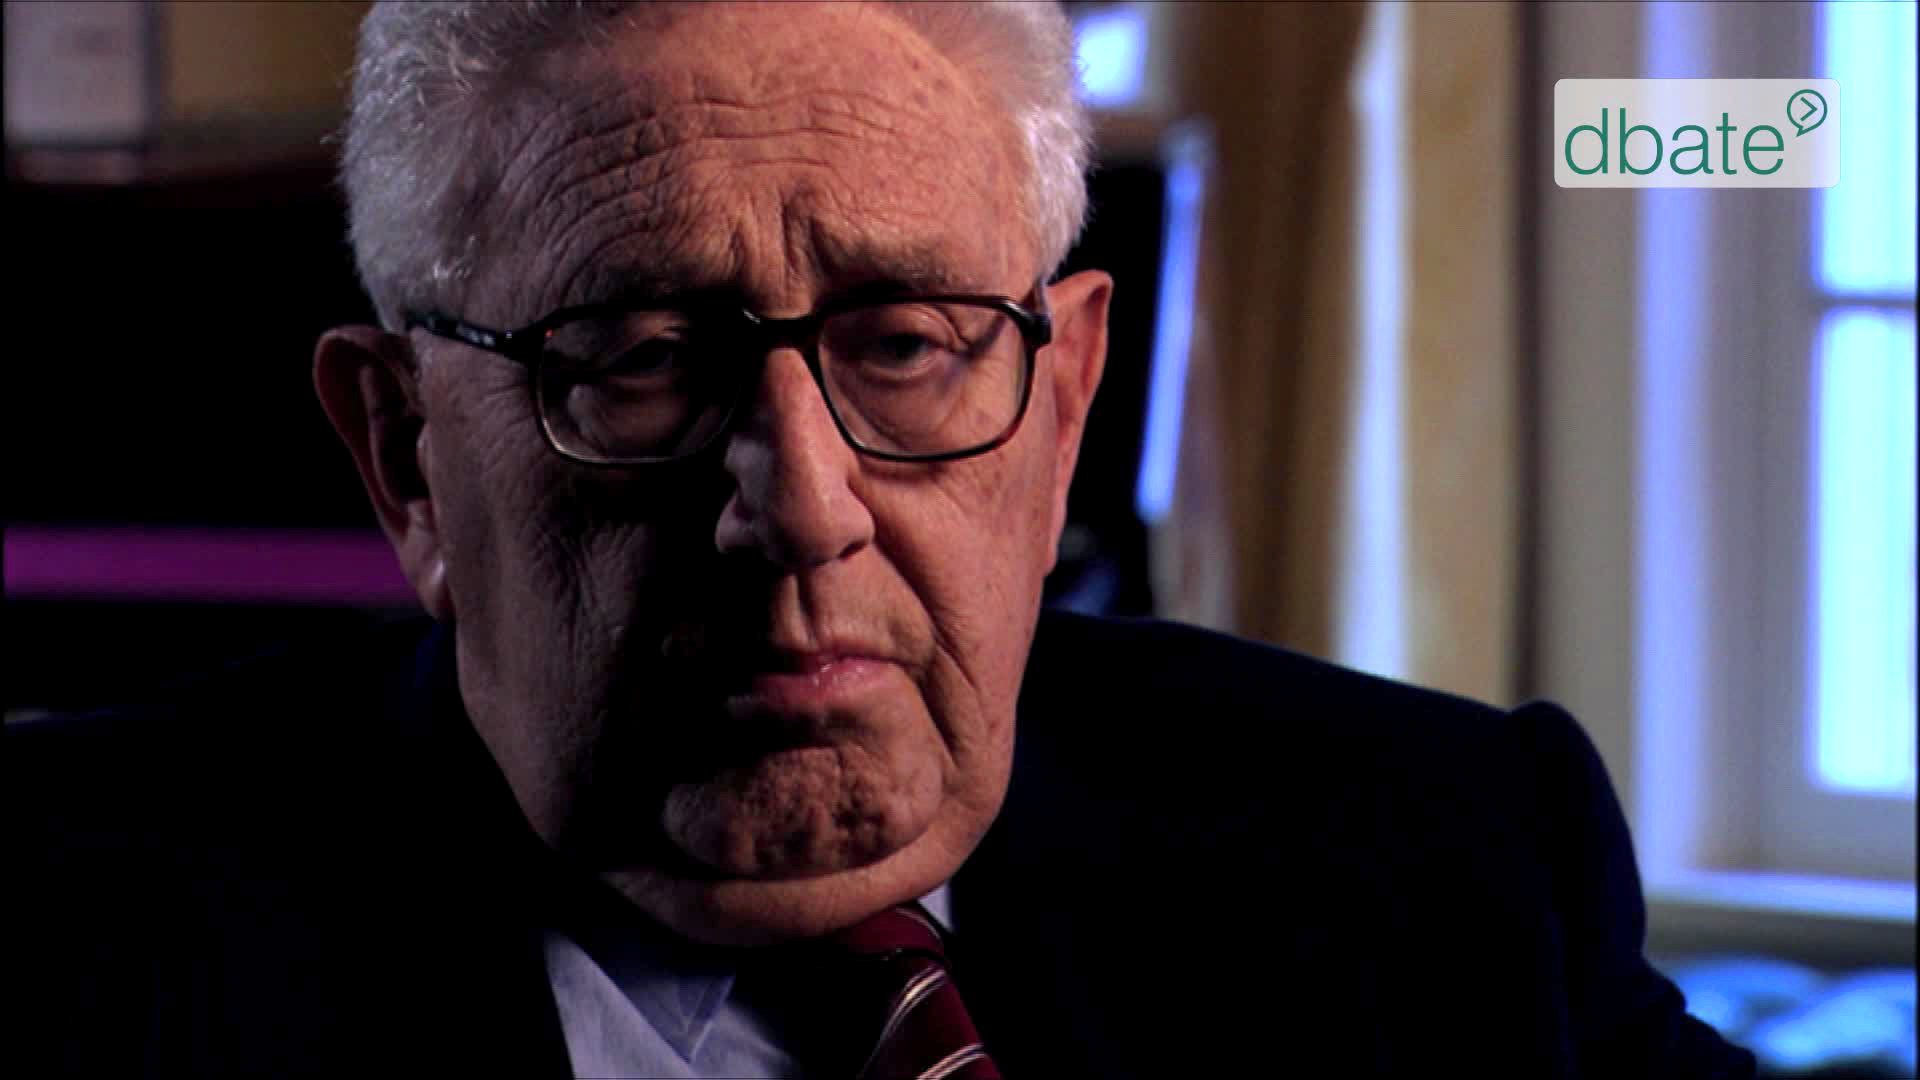 Screenshot_Henry Kissinger_dbate (1)